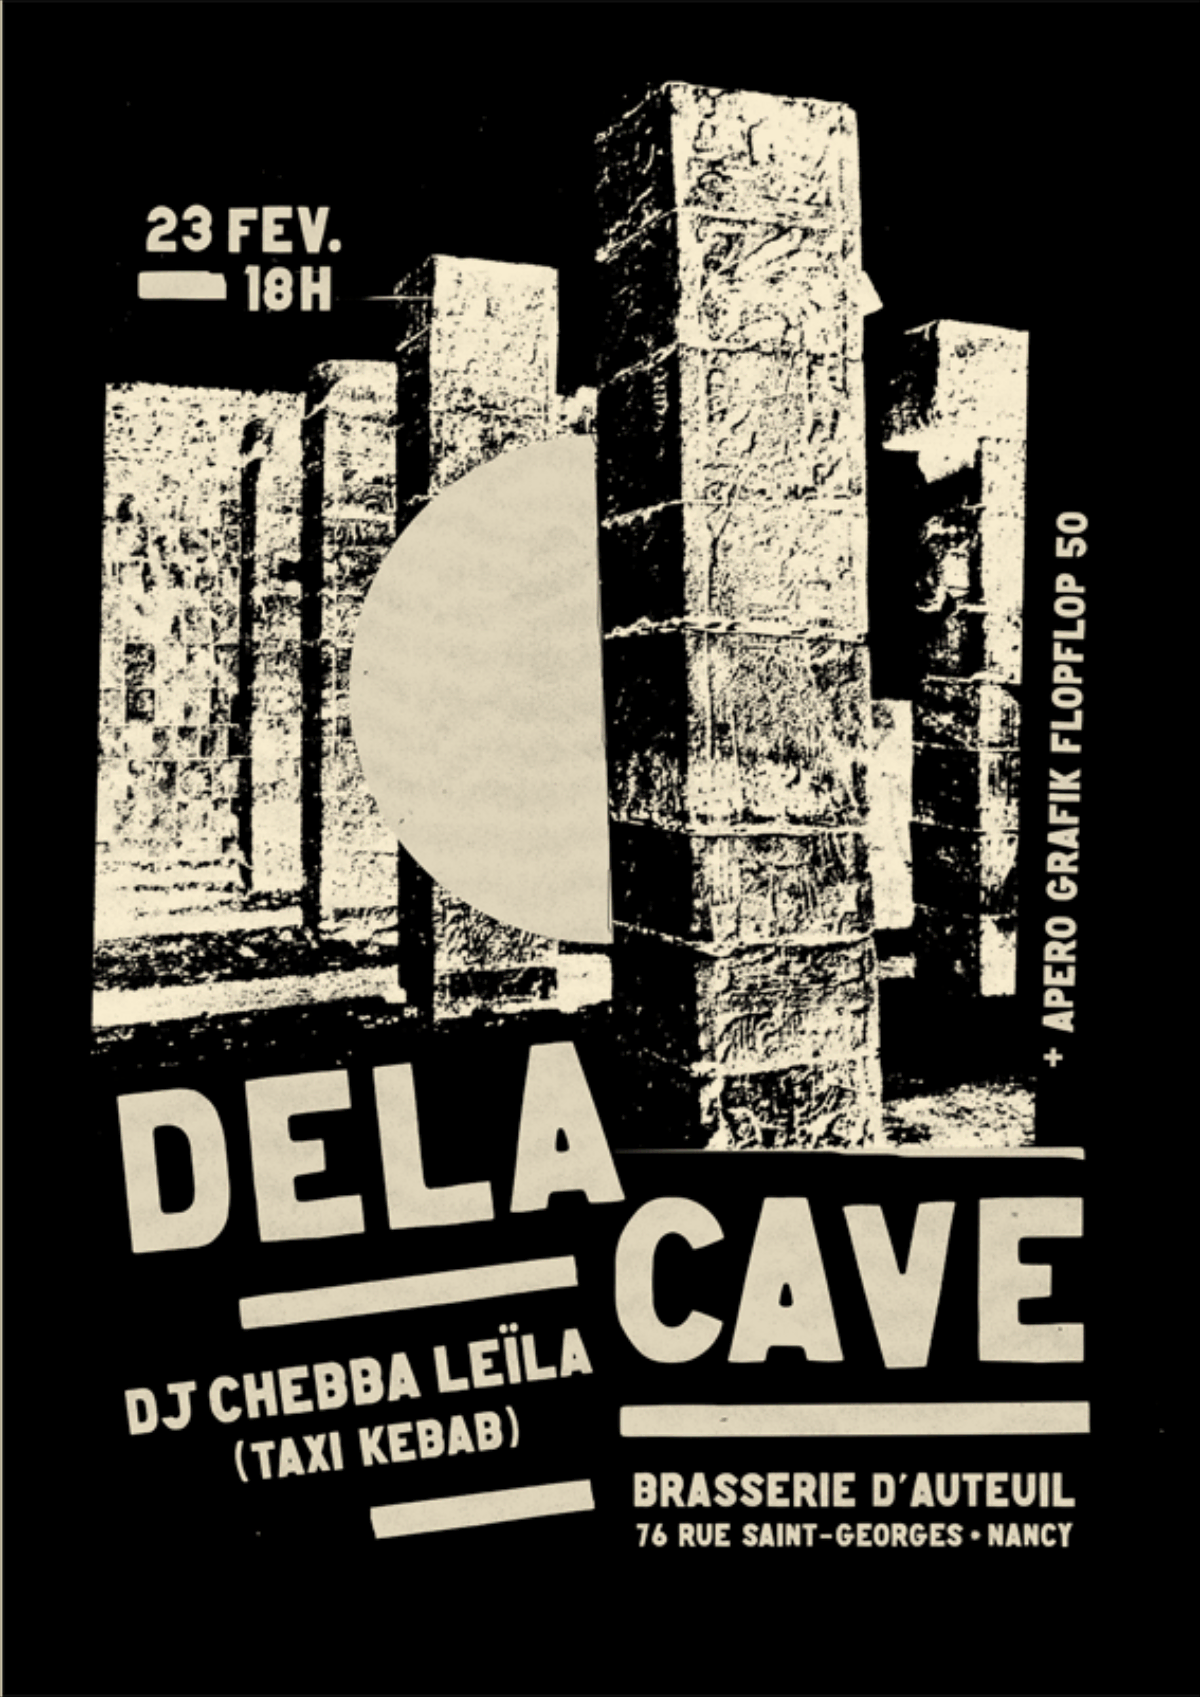 Concert DELACAVE + Dj Chebba Leïla + Apéro Grafik